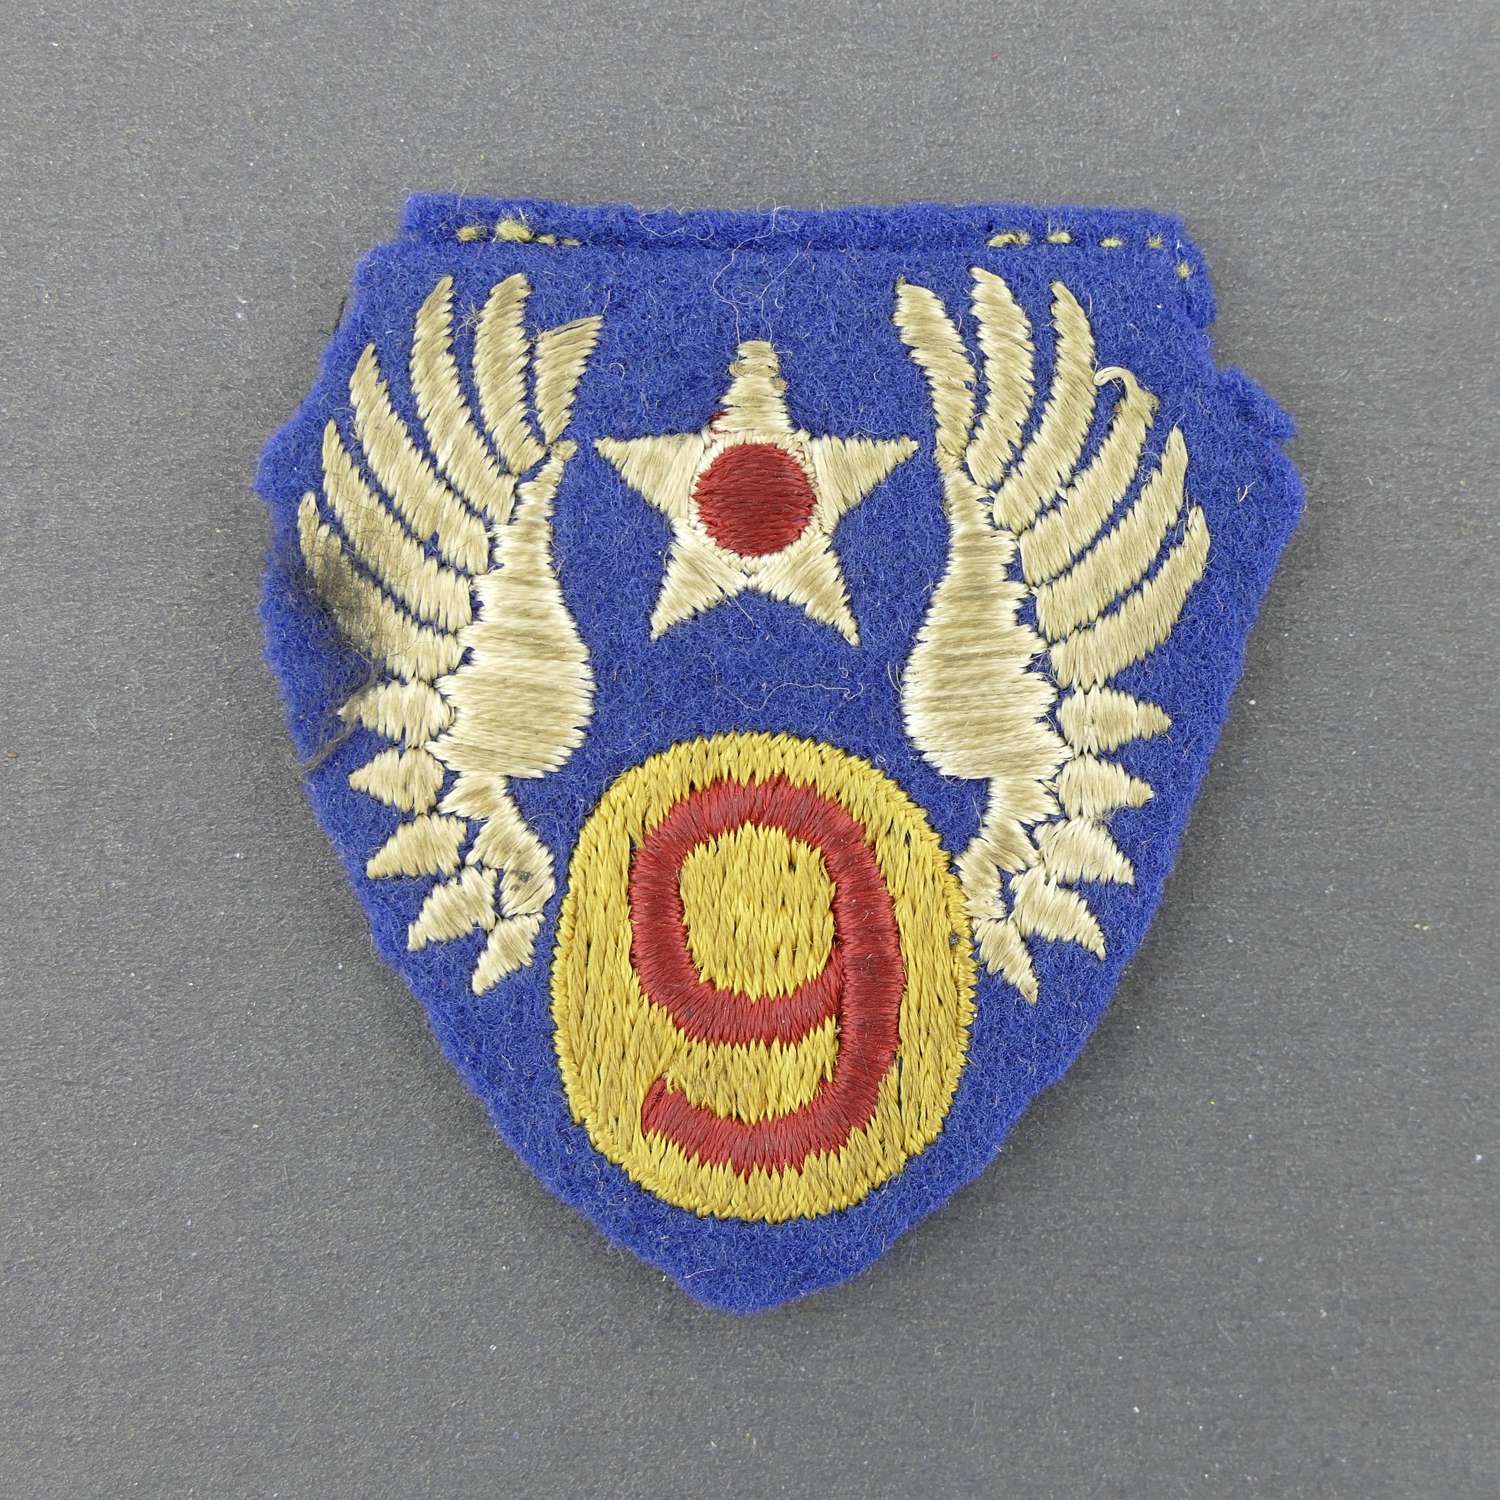 USAAF 9th AF shoulder patch - English made